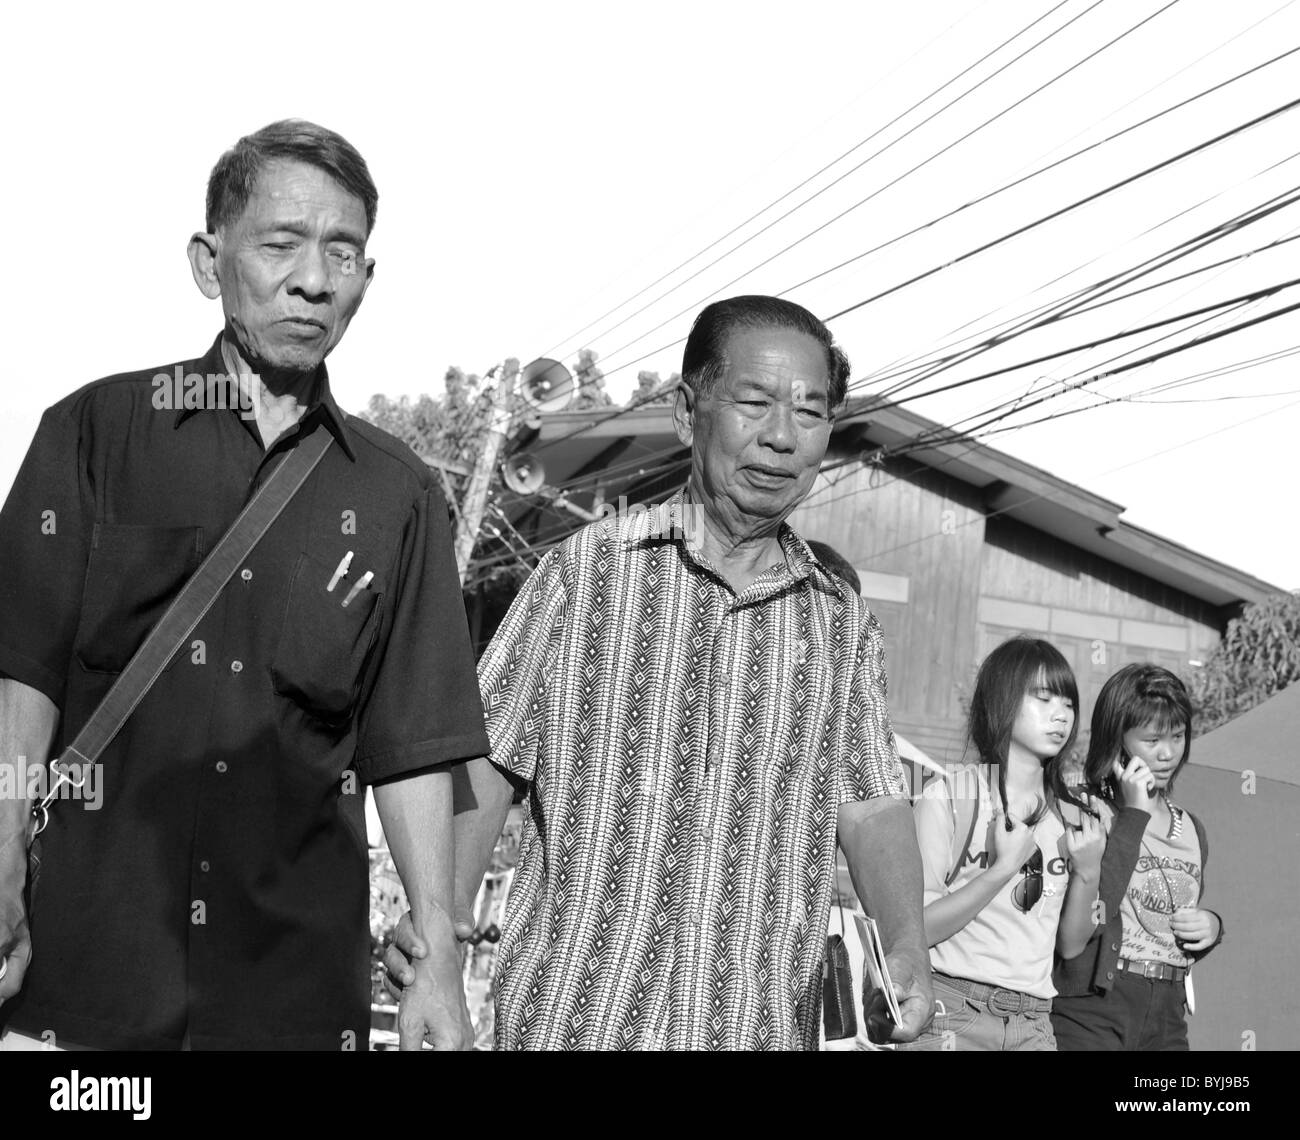 Schwarz / weiß Foto von zwei Thai Männer zu Fuß entlang einer Straße Stockfoto